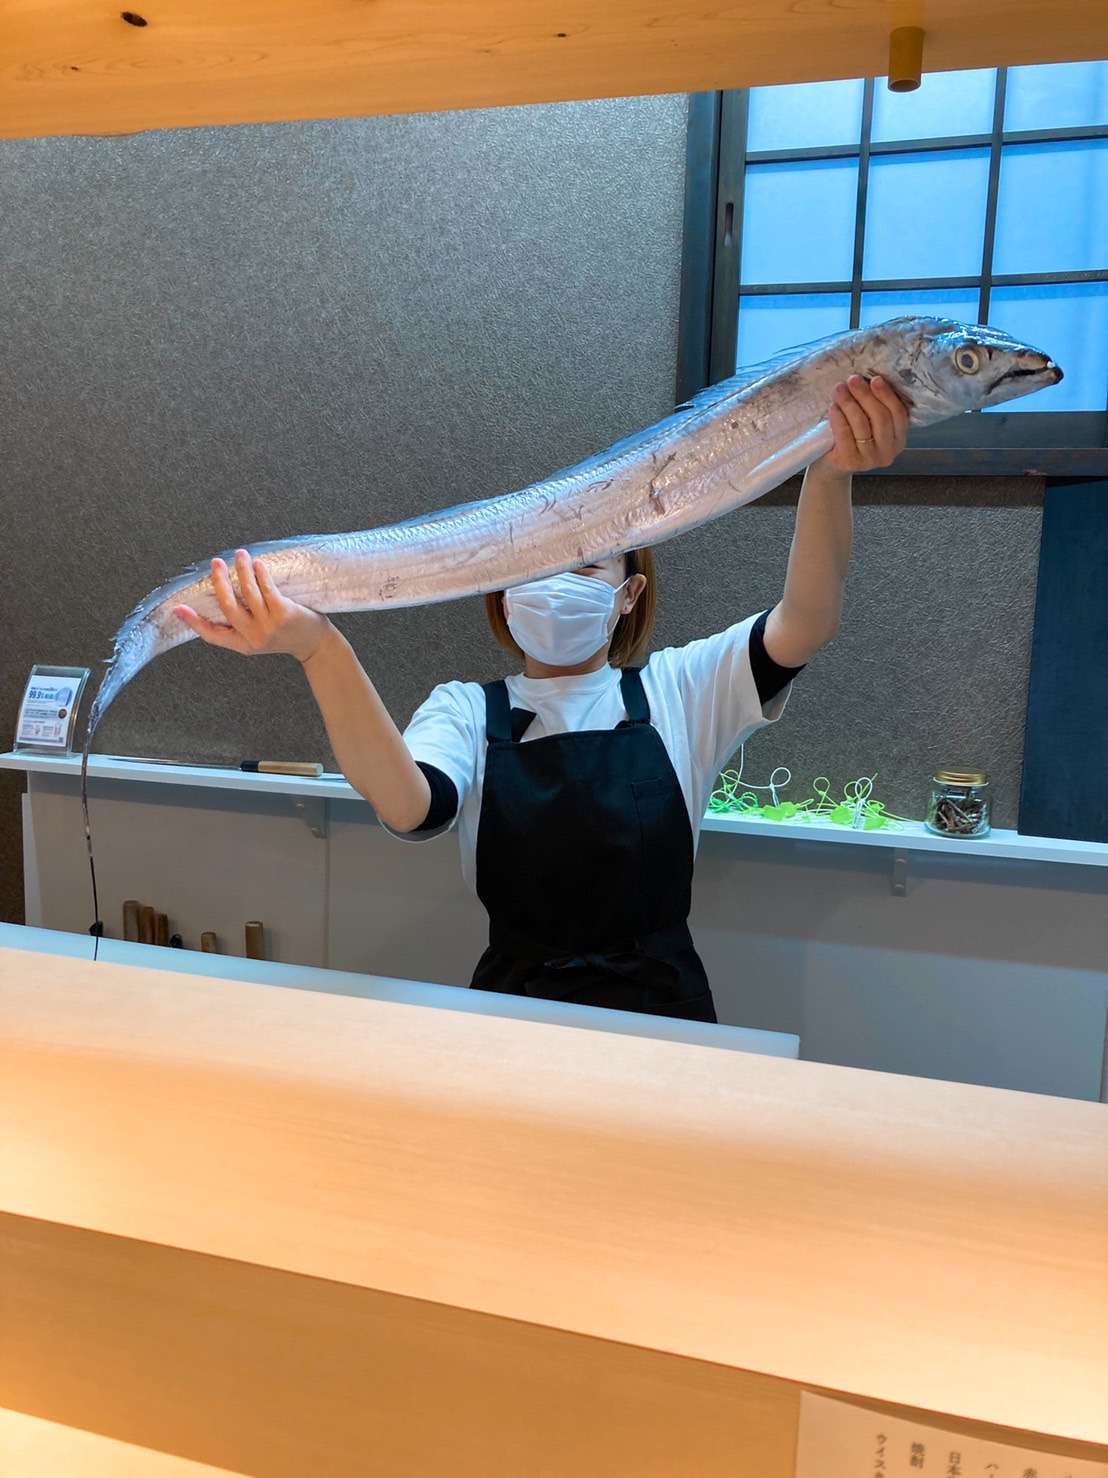 「ぶっとい」太刀魚🐟(三田市でぶっとい太刀魚食べれるのはおととごはん味保)